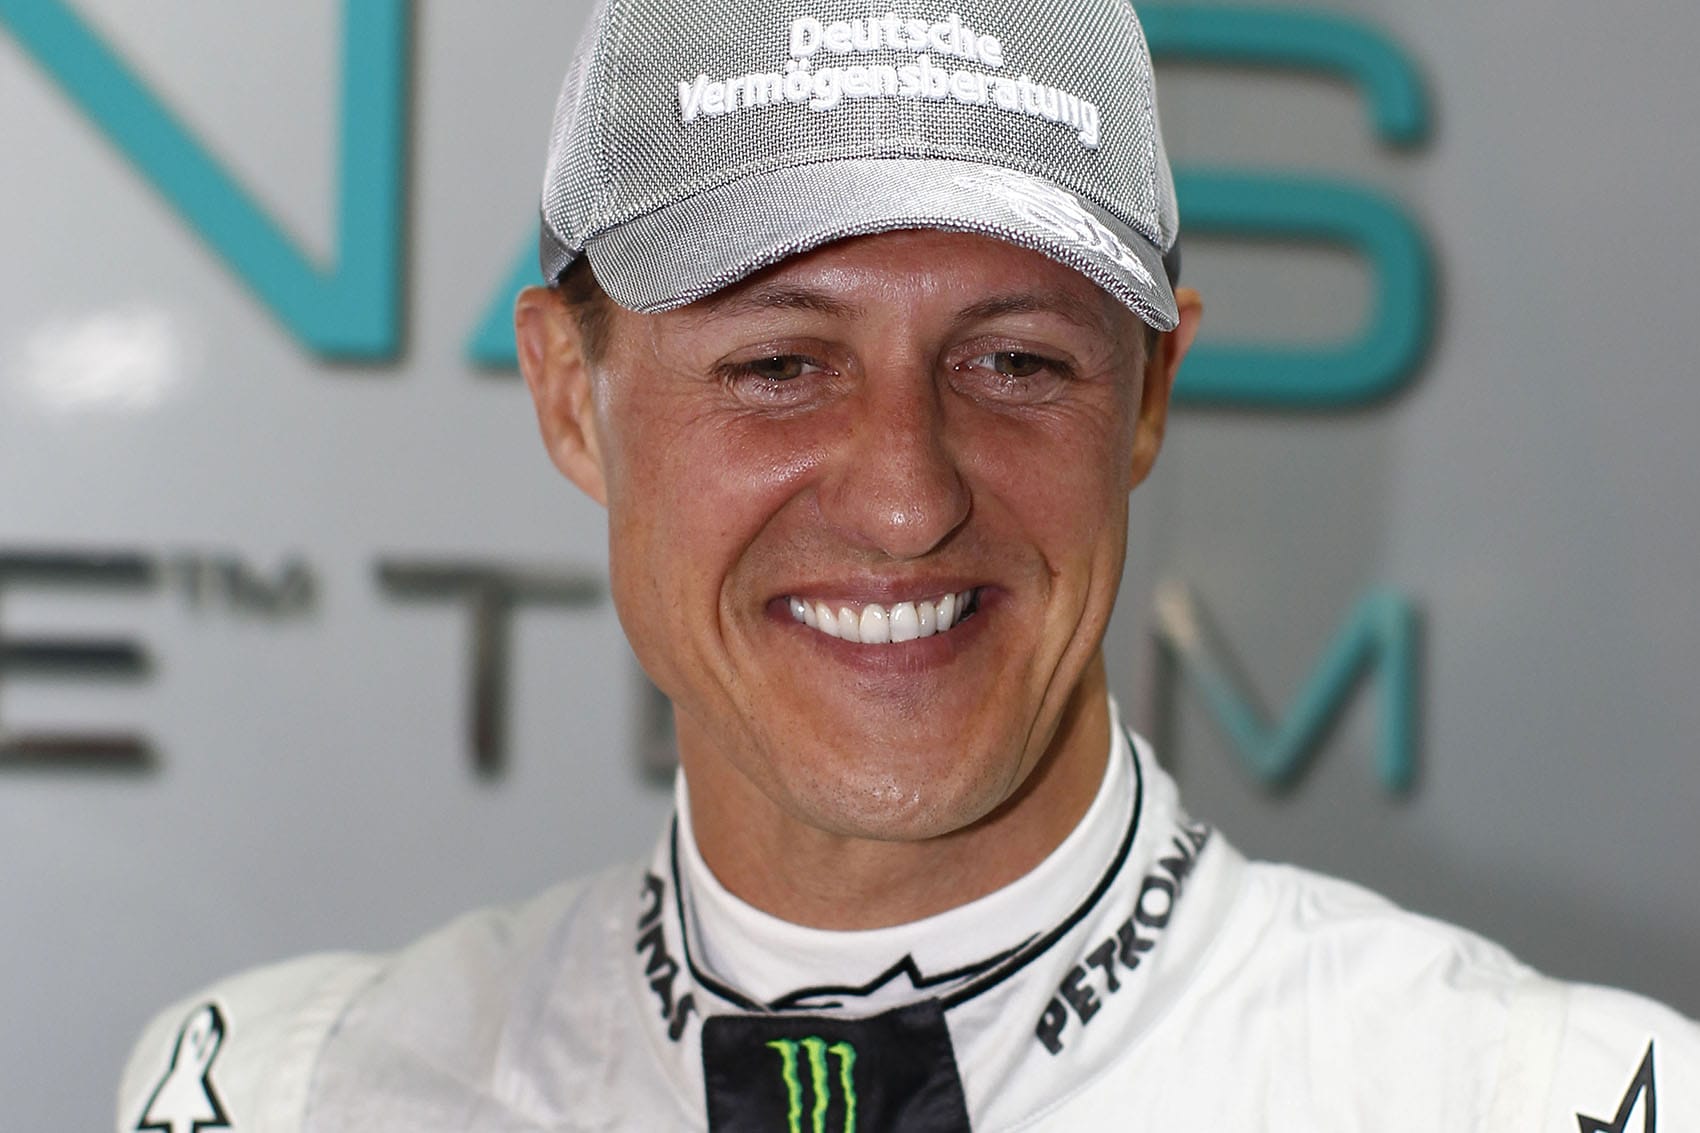 A diszkó kidobója Schumacherről készült fotókkal zsarolta a családot – végre kiderült az igazság